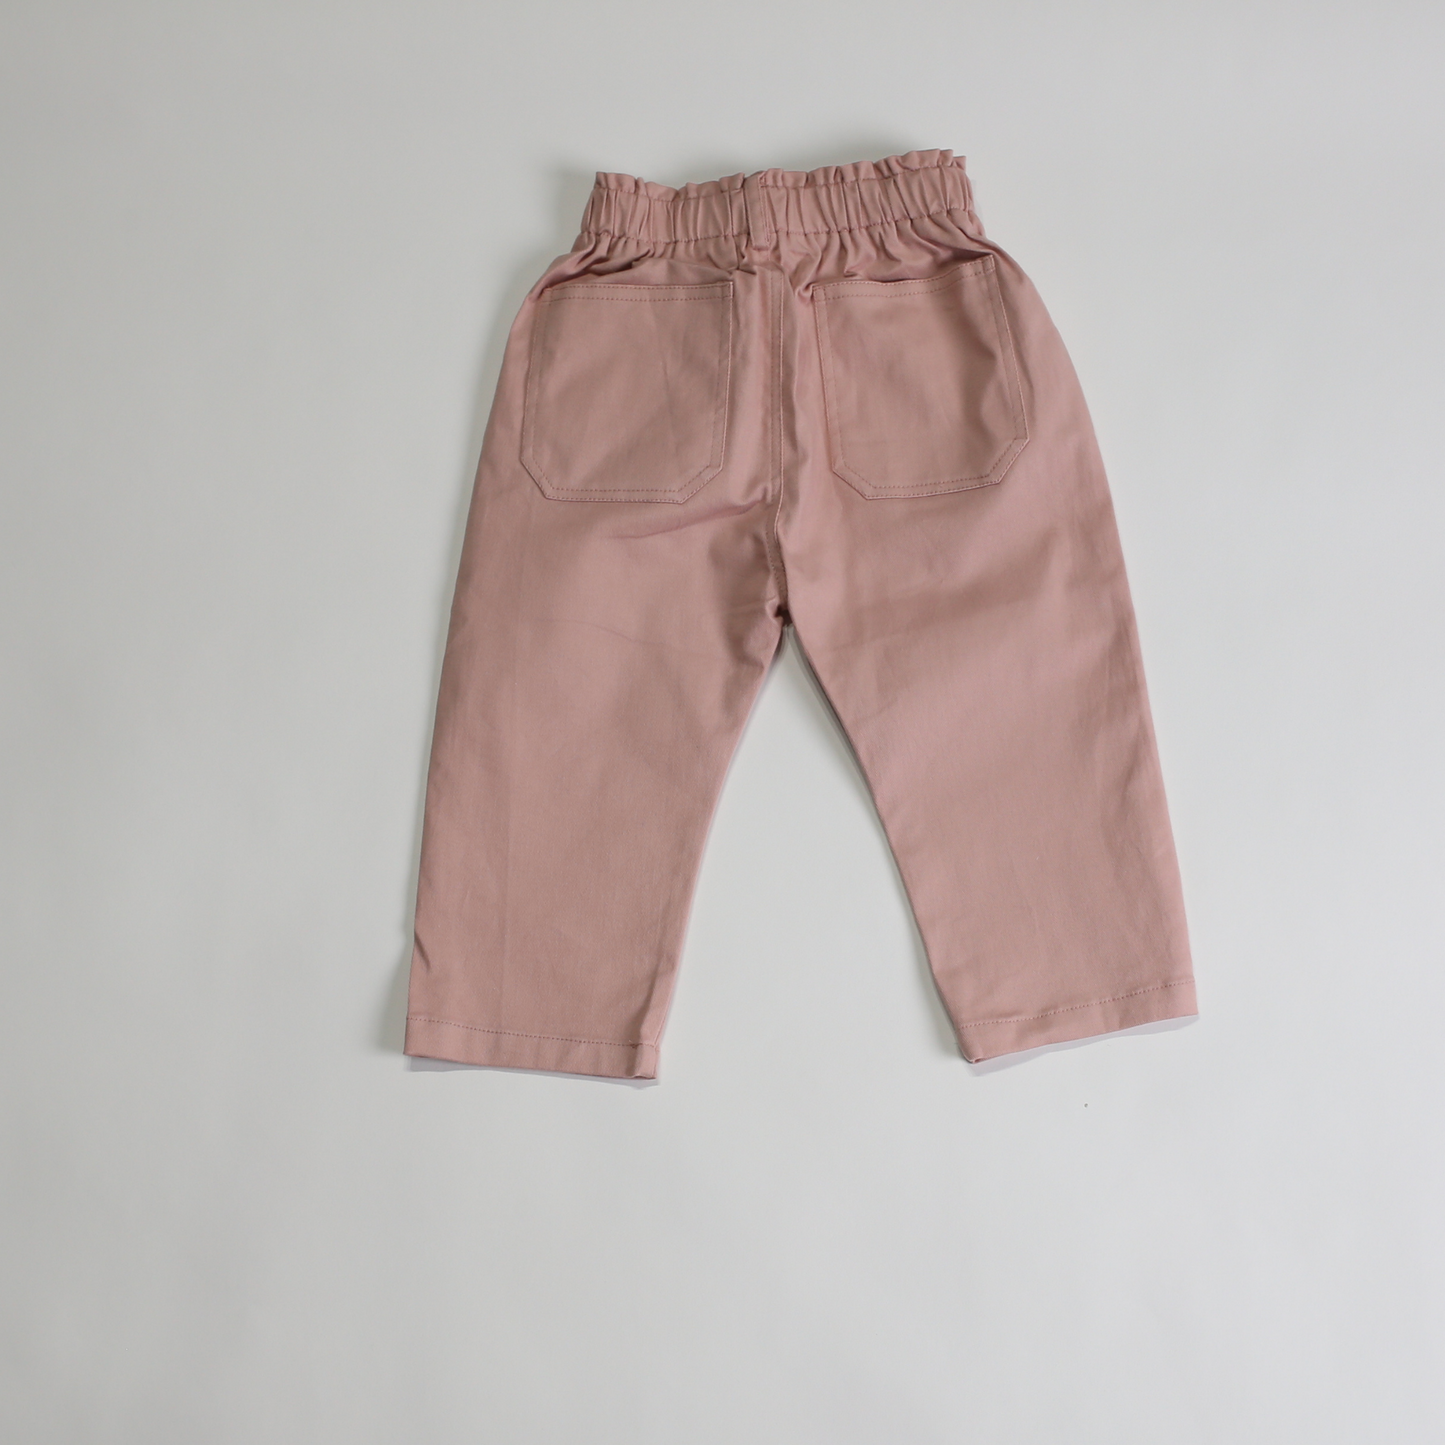 コットン パンツ / cotton pants (こども服) - kids clothes shop GUZUGUZU